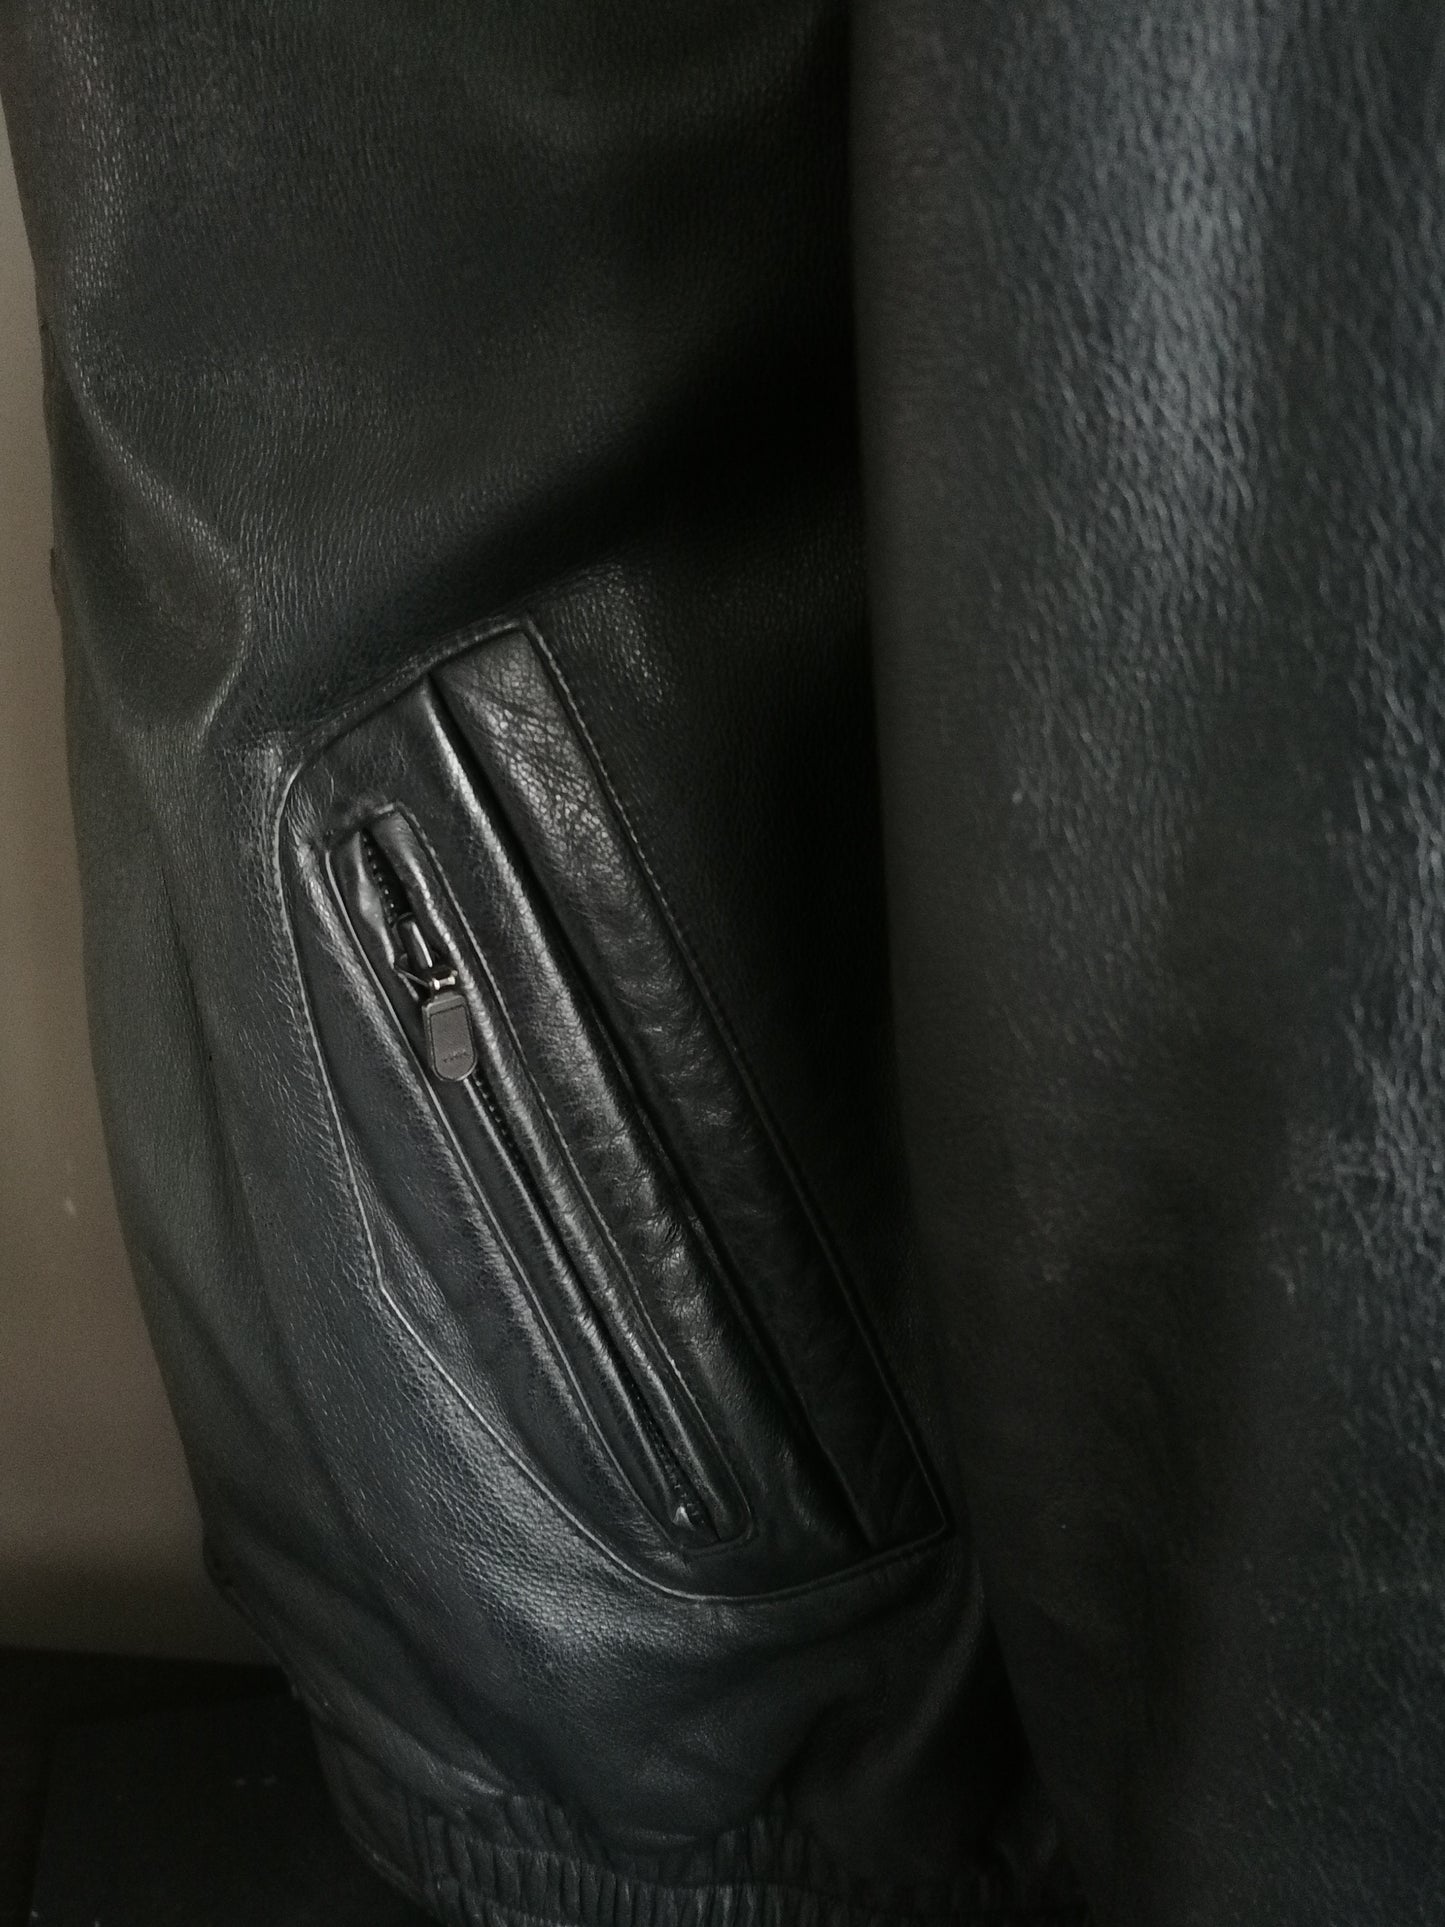 Vintage Lederjacke. Mit doppelter Schließung und Taschen ausgekleidet. Schwarz gefärbt. Größe 56 / xl.